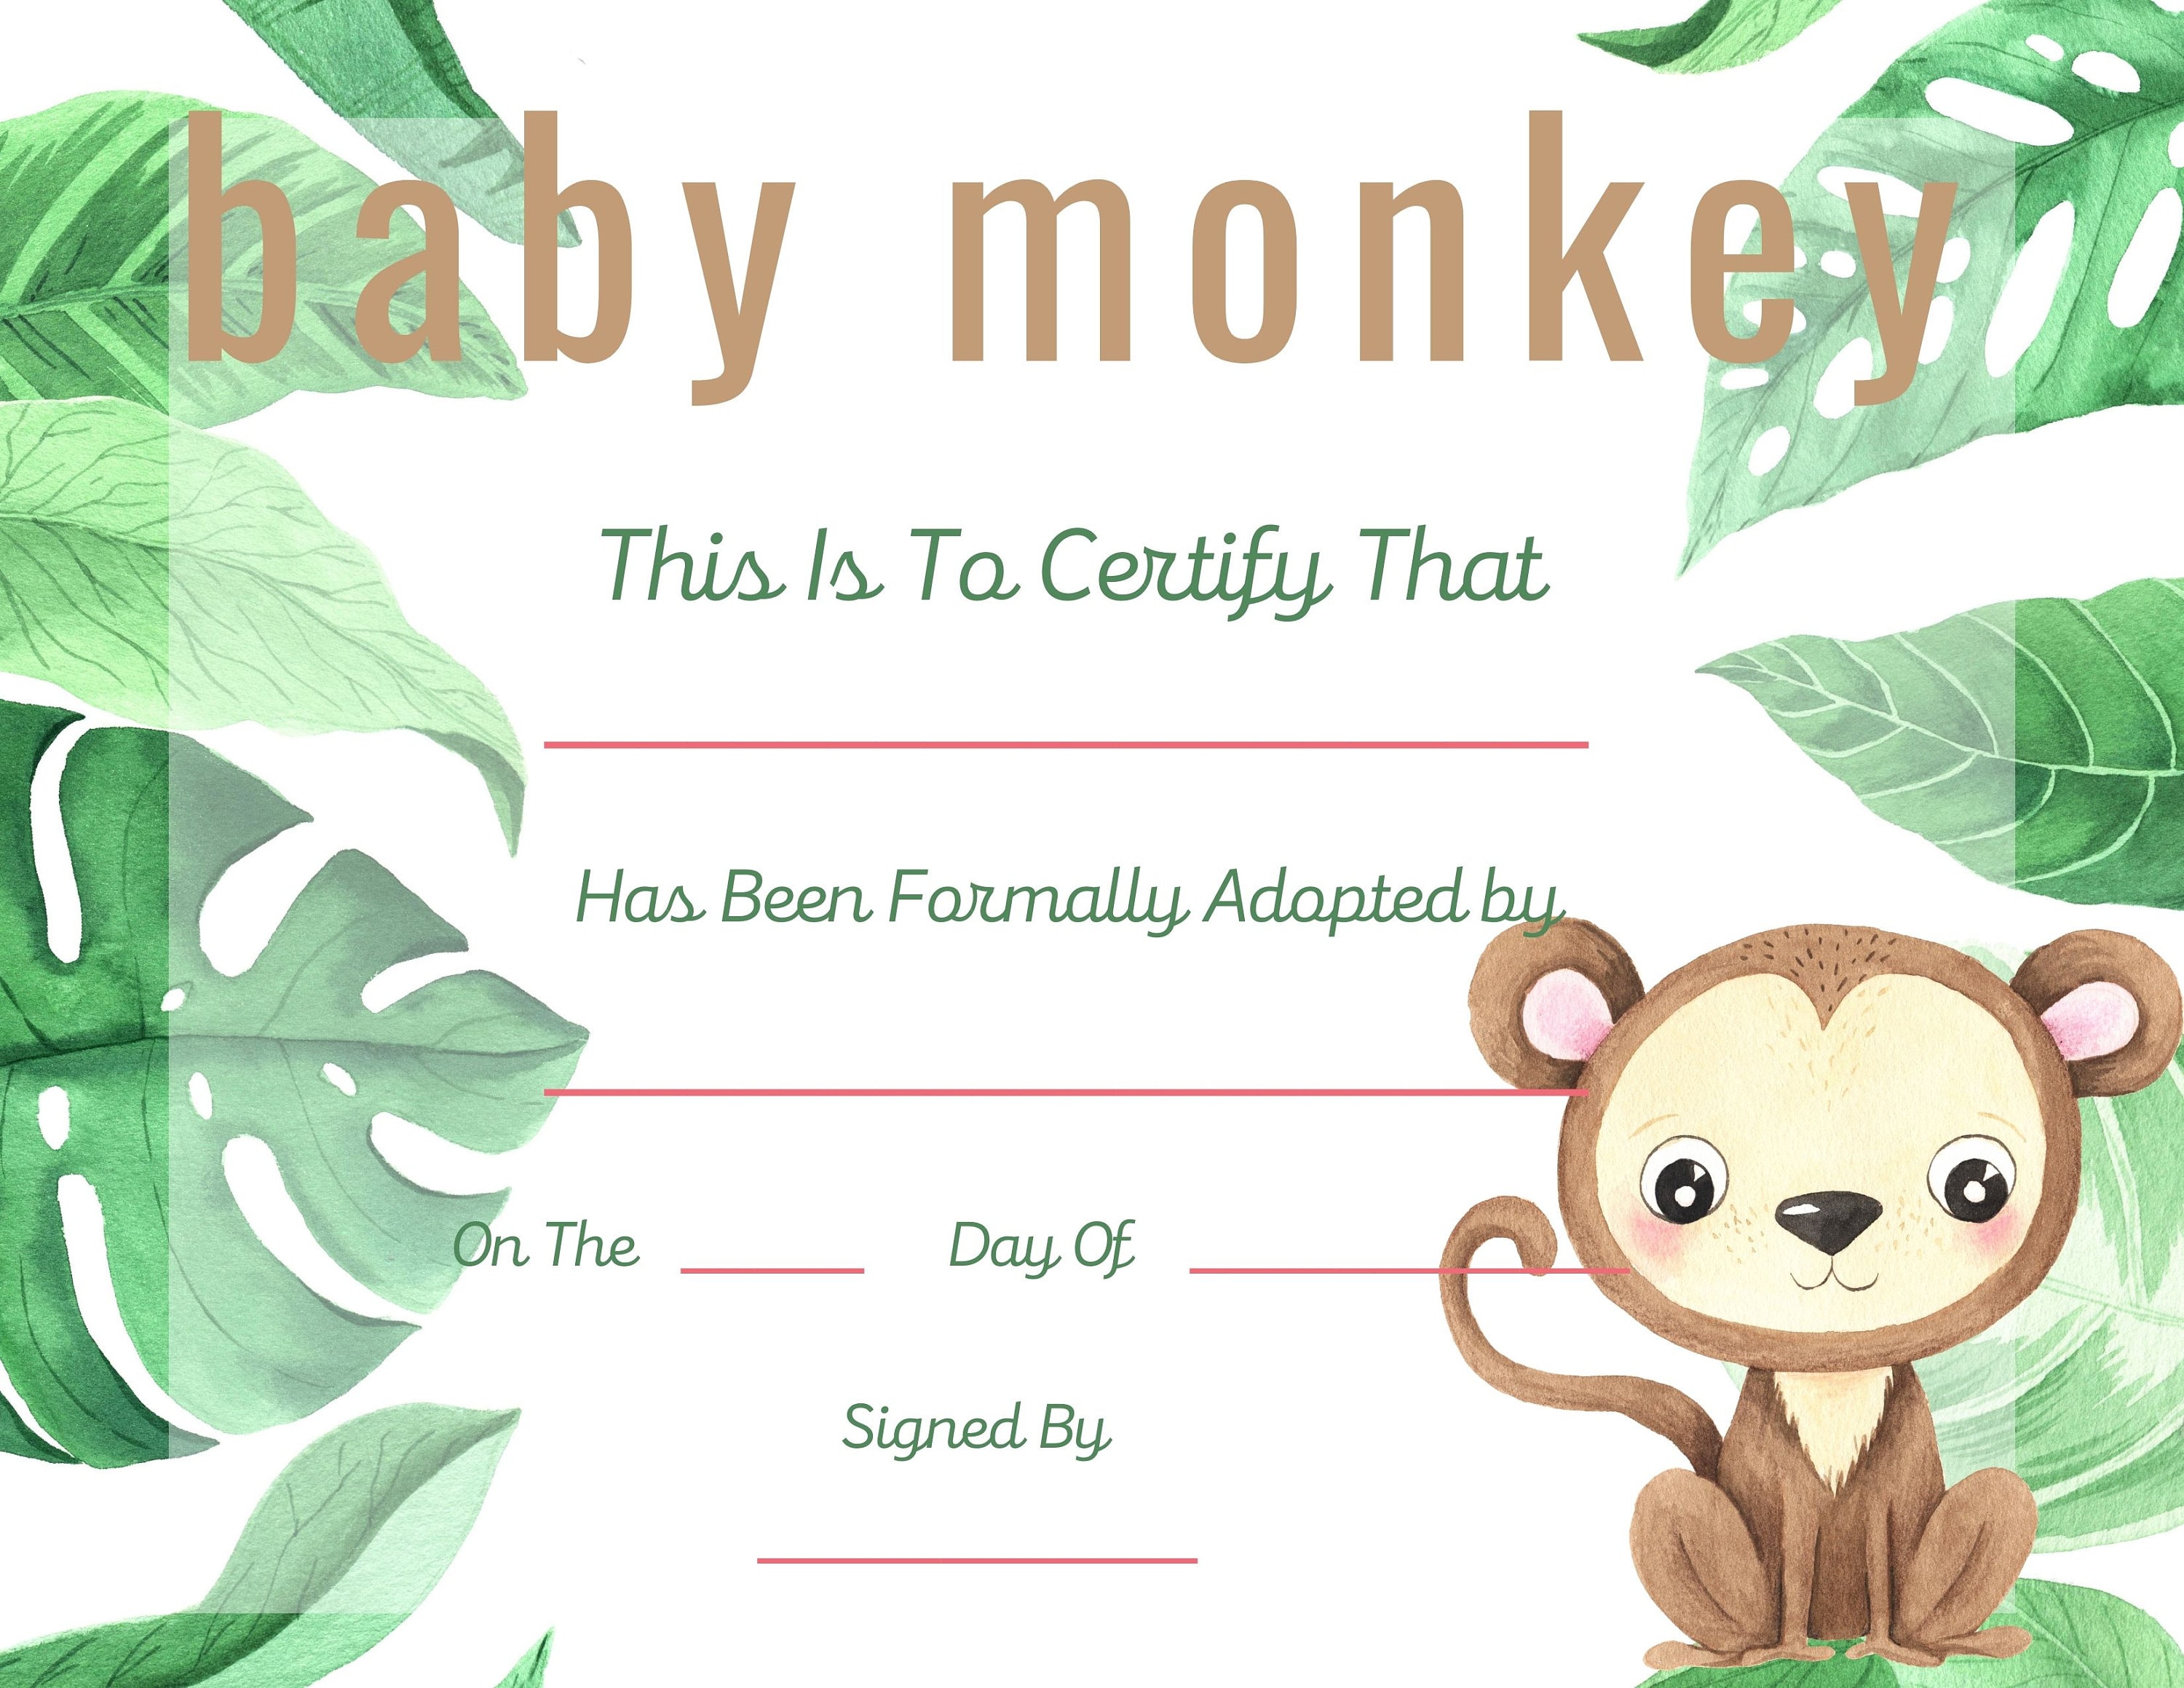 Adopt a Monkey